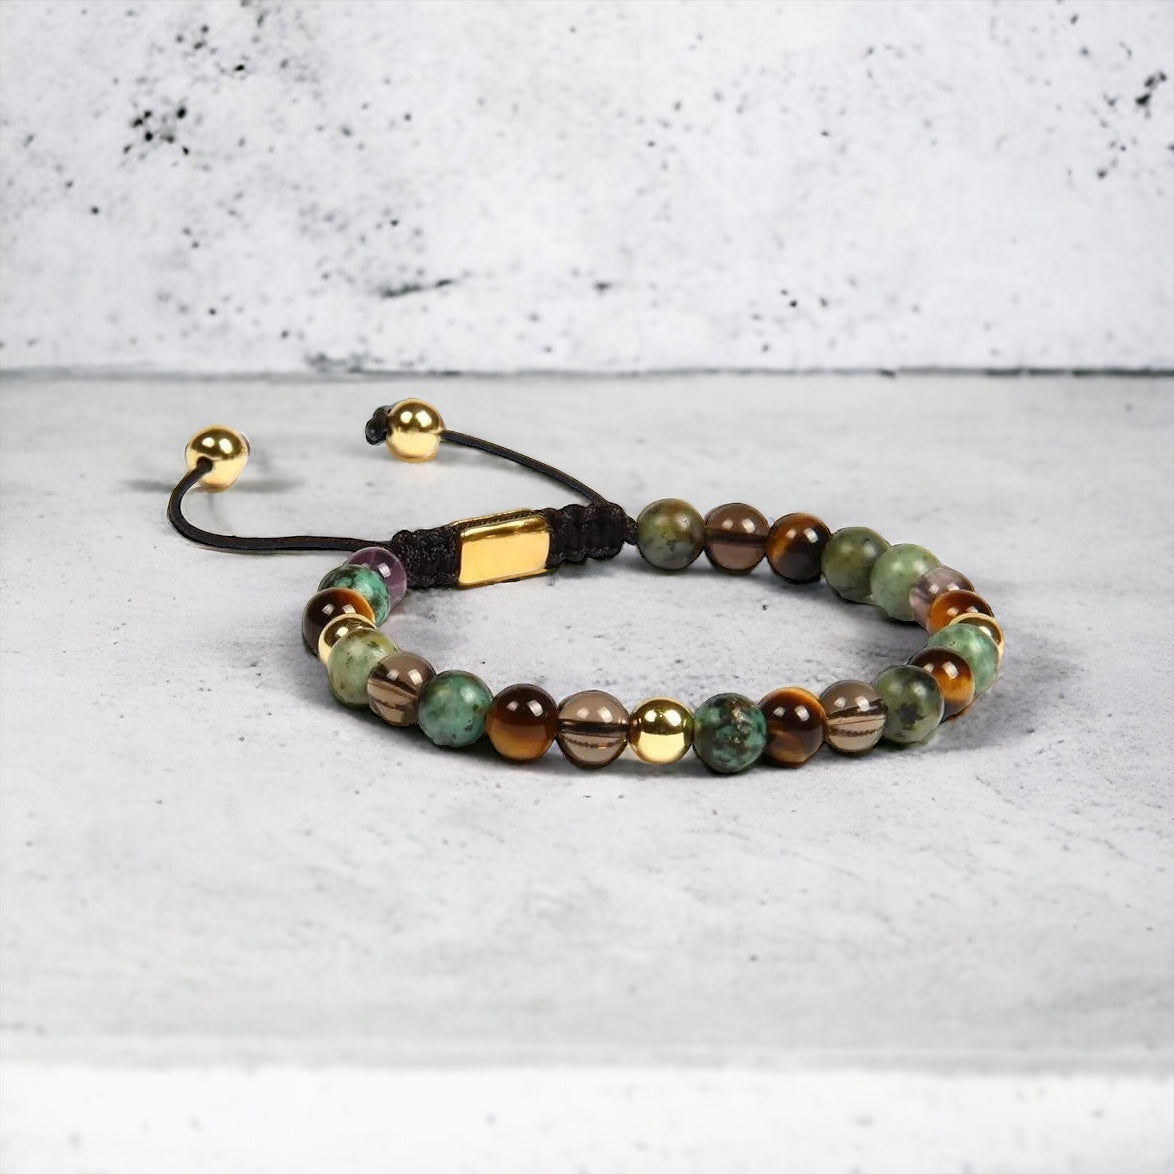 Jasper, Tiger Eye, Quartz & Gold Beads Macrame Bracelet - My Harmony Tree